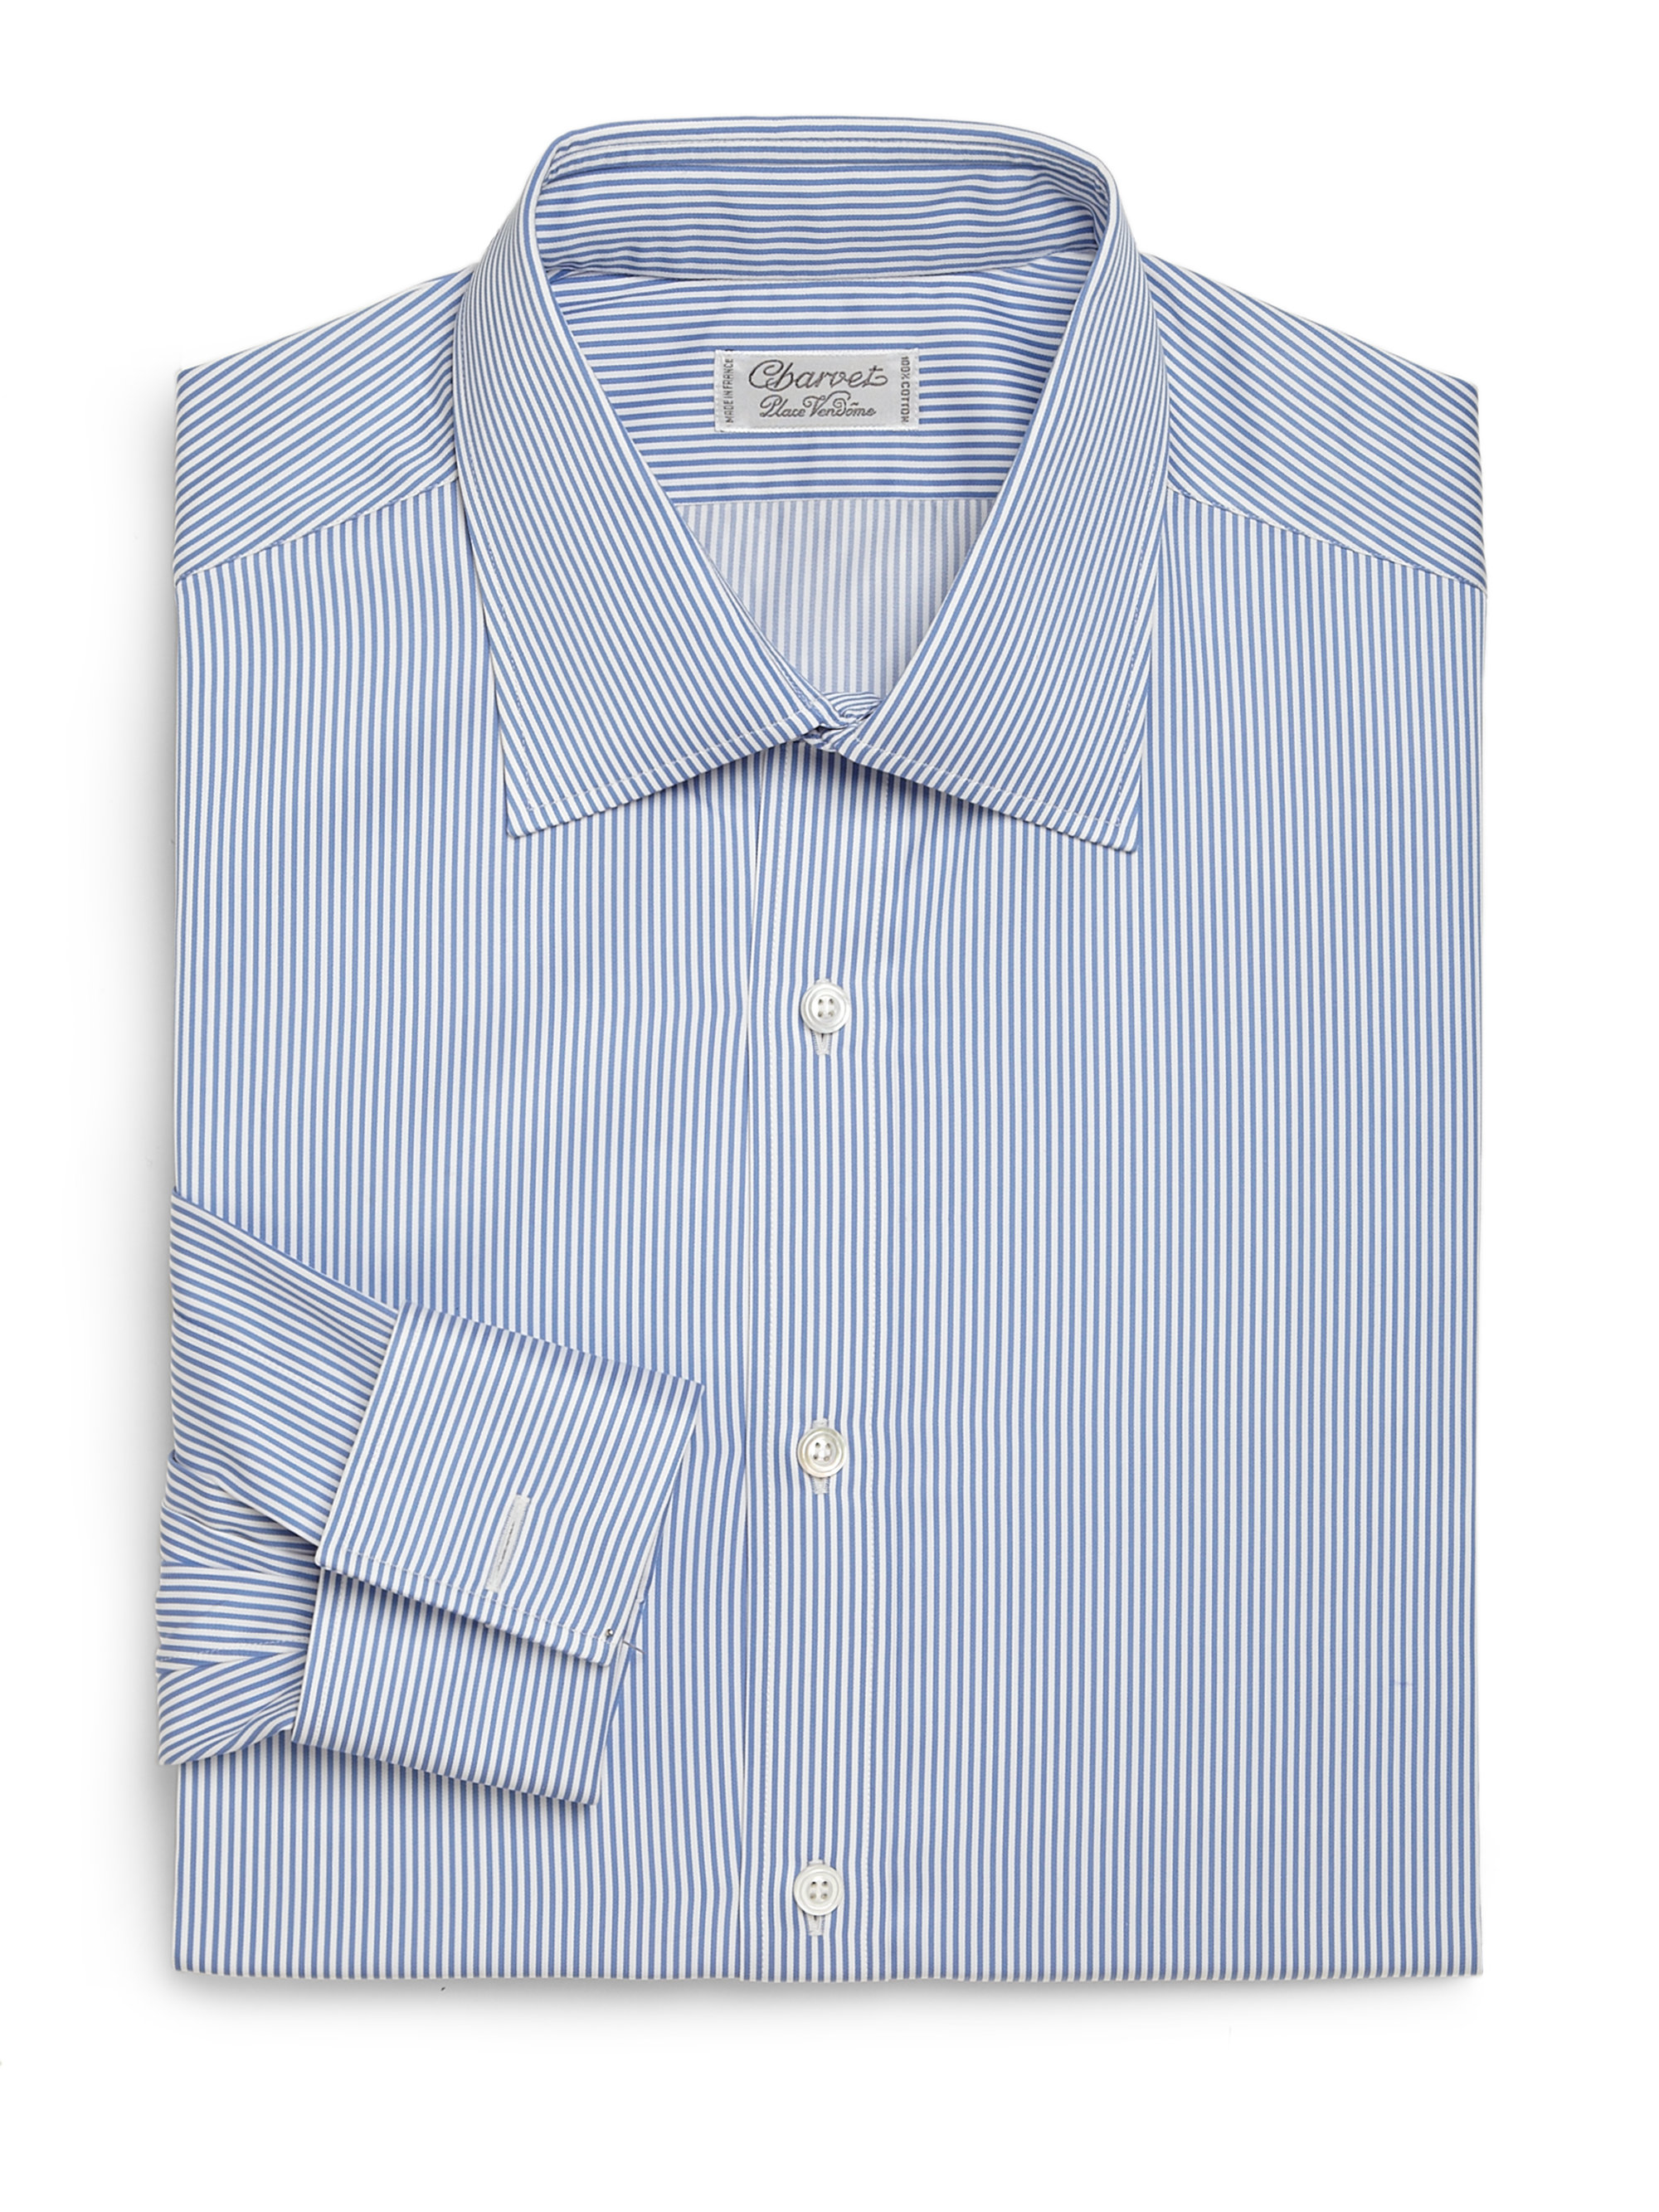 Charvet Striped Cotton Dress Shirt in Blue-White (White) for Men - Lyst